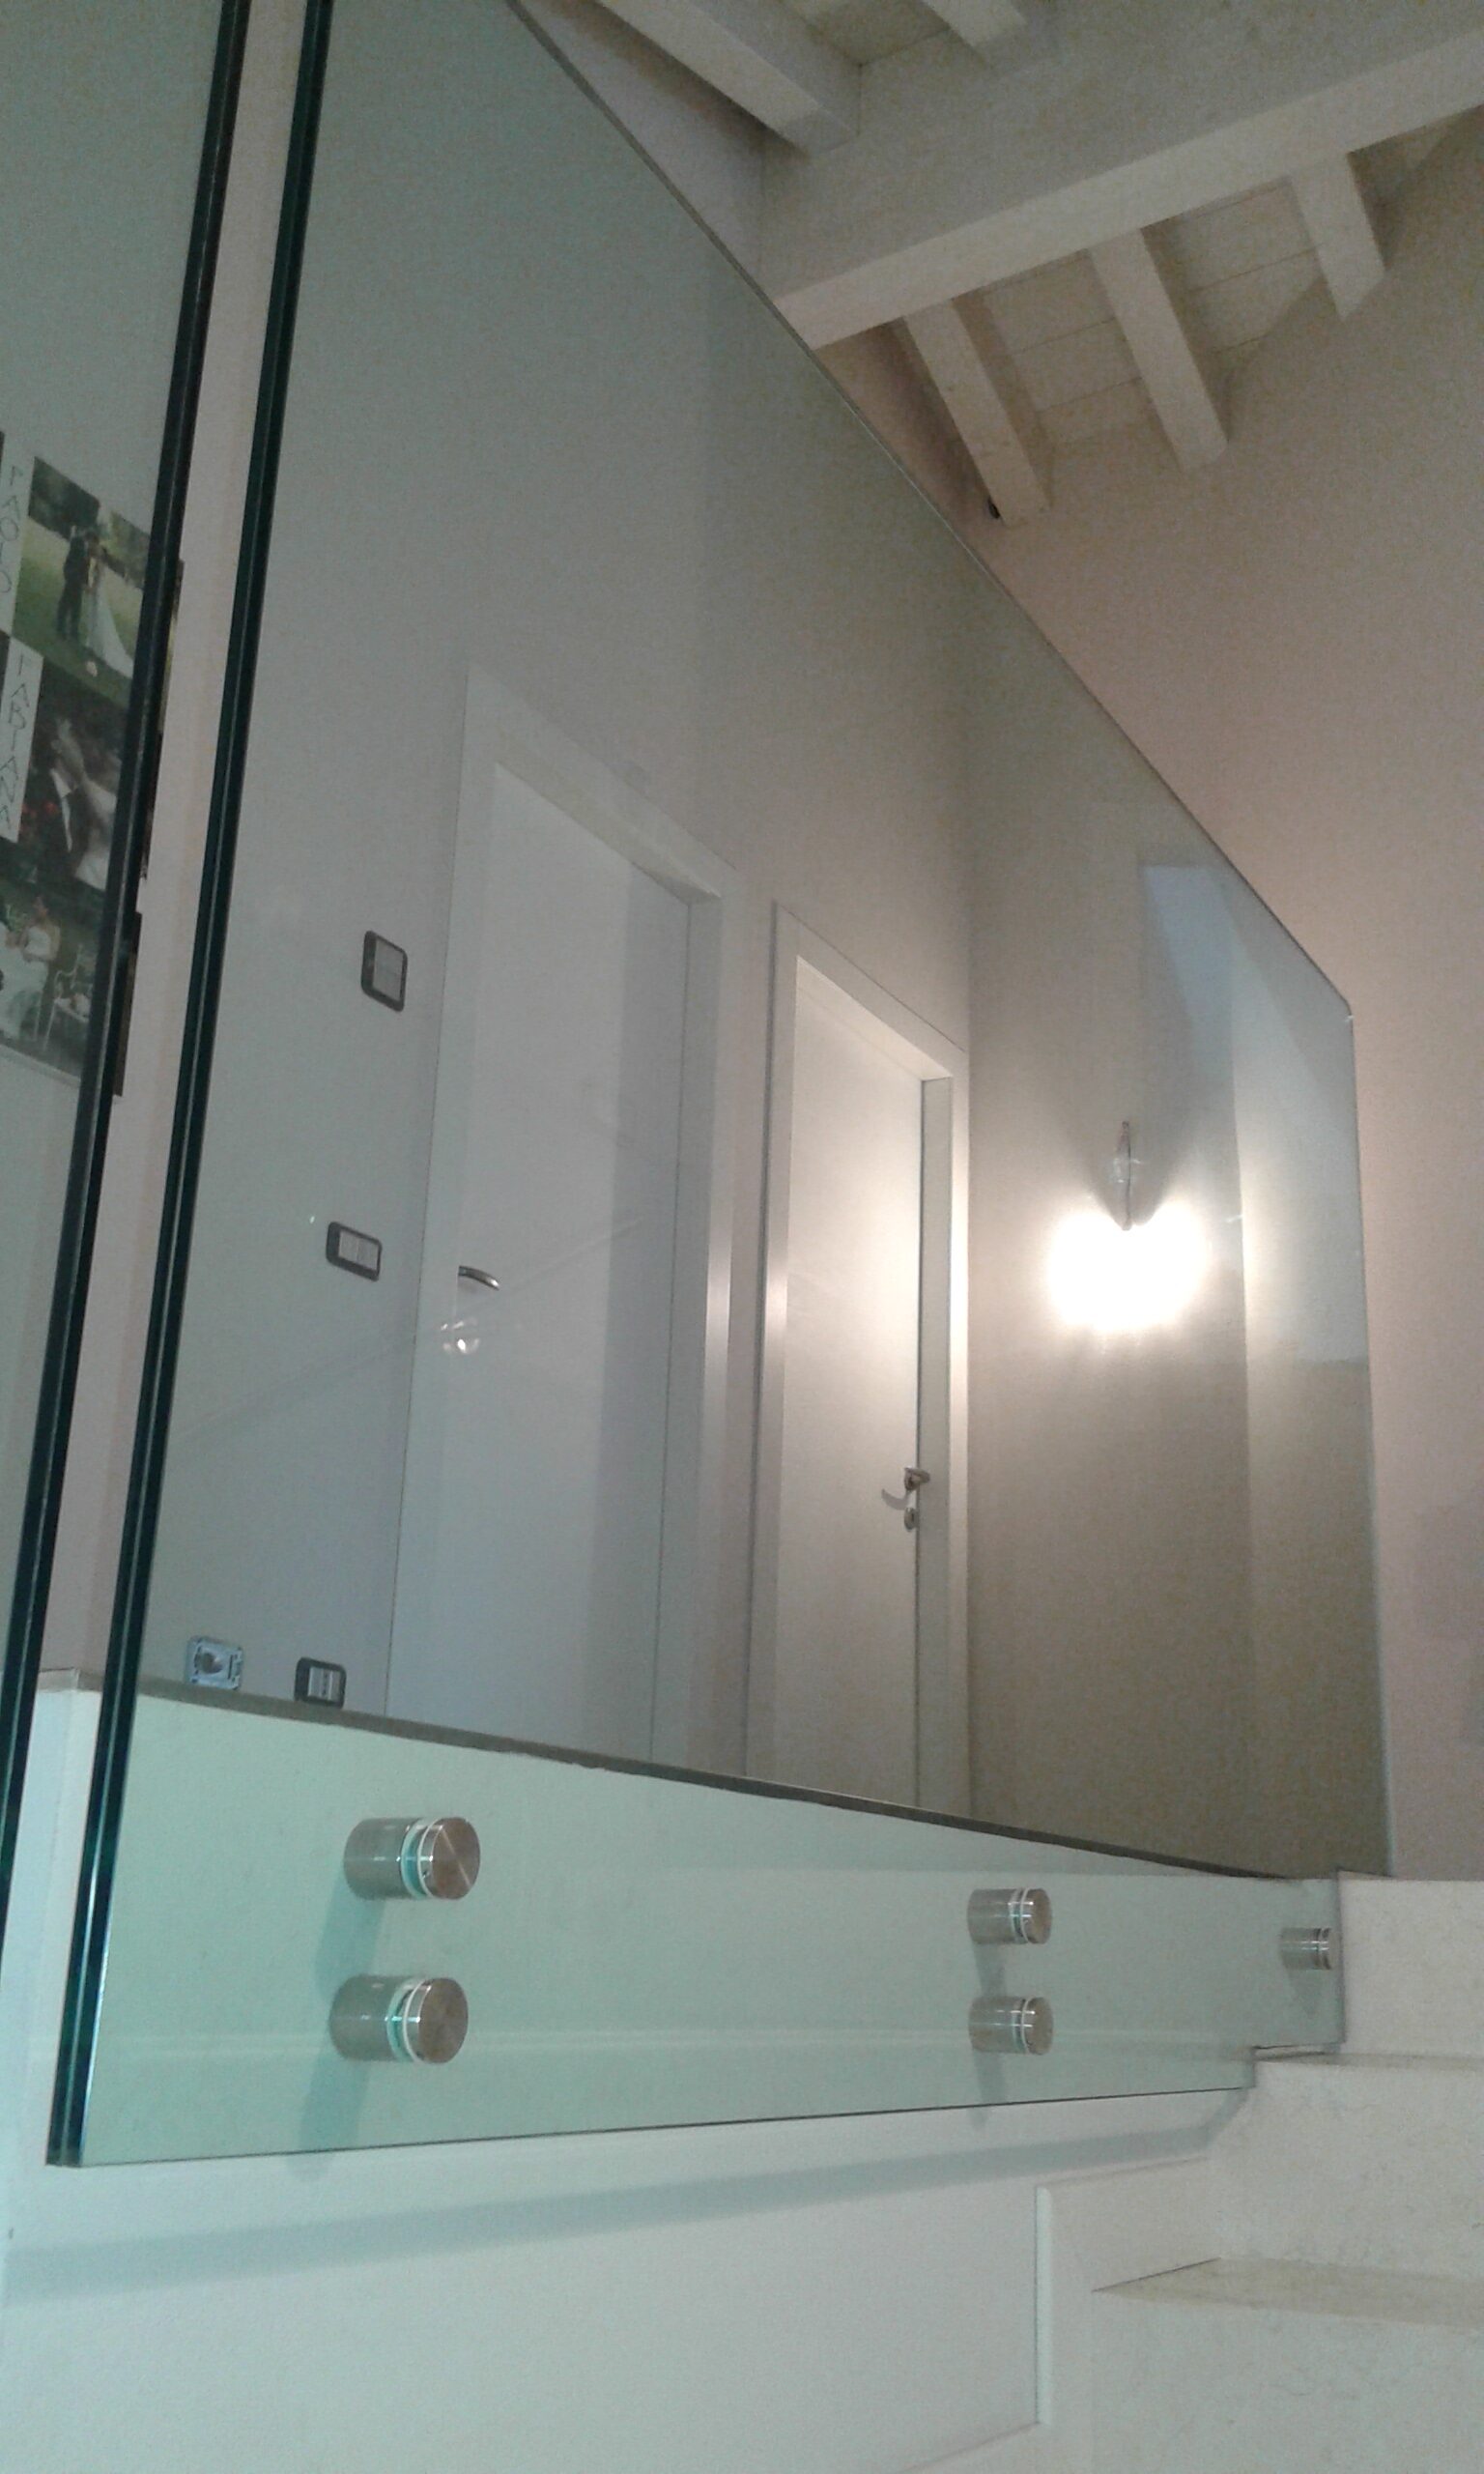 Parapetto in vetro trasparente per una scala moderna a Treviso.